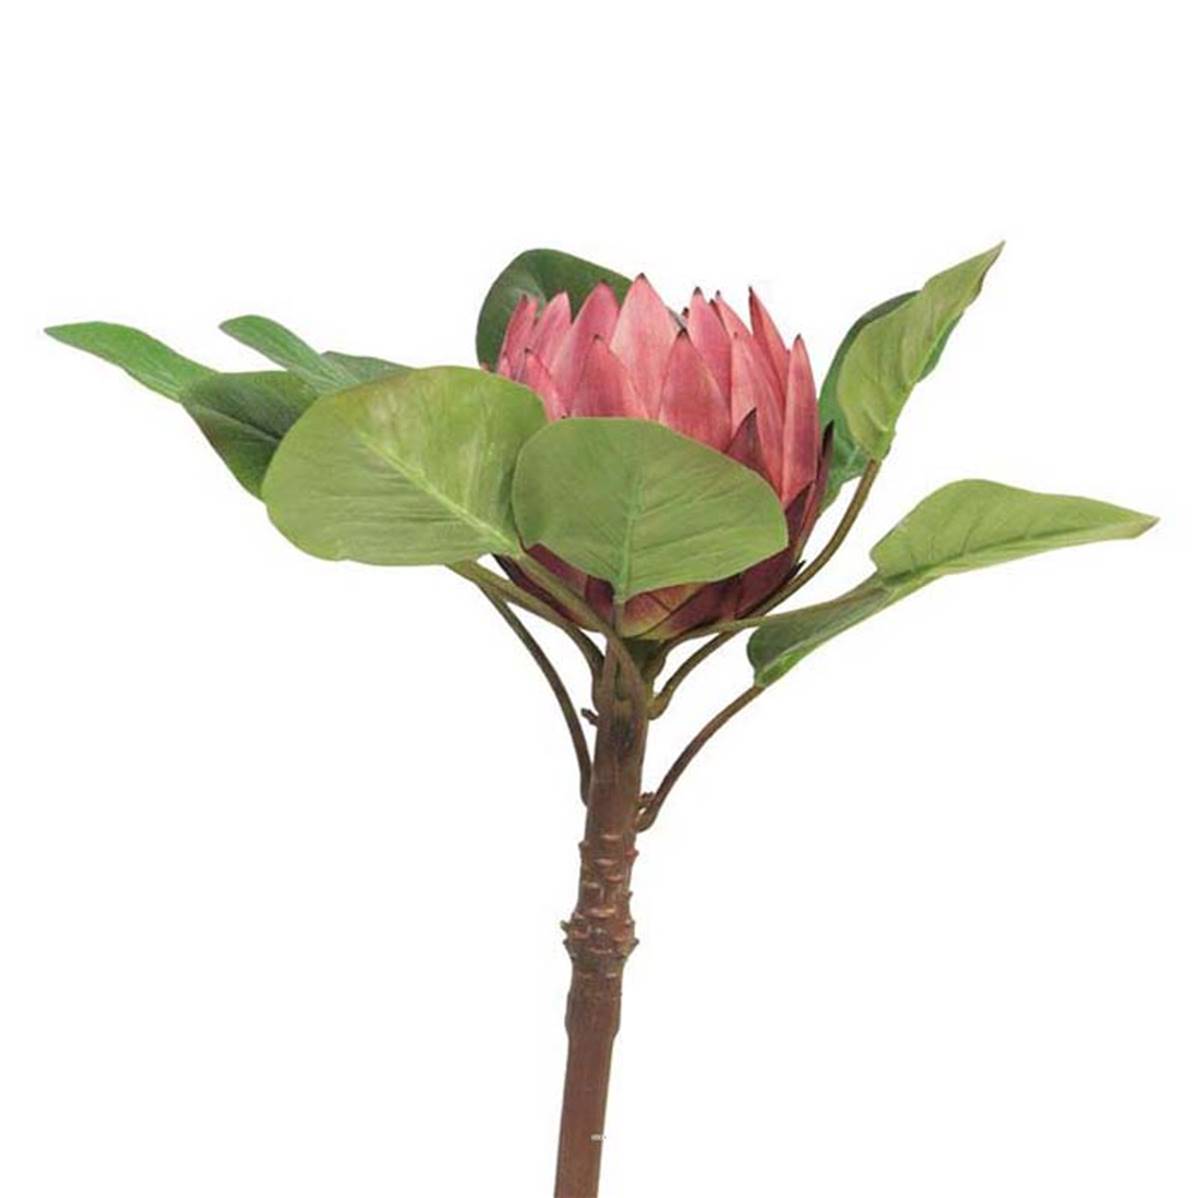 Protea artificielle, spéciale grande taille, H 84 cm | Artificielles.com